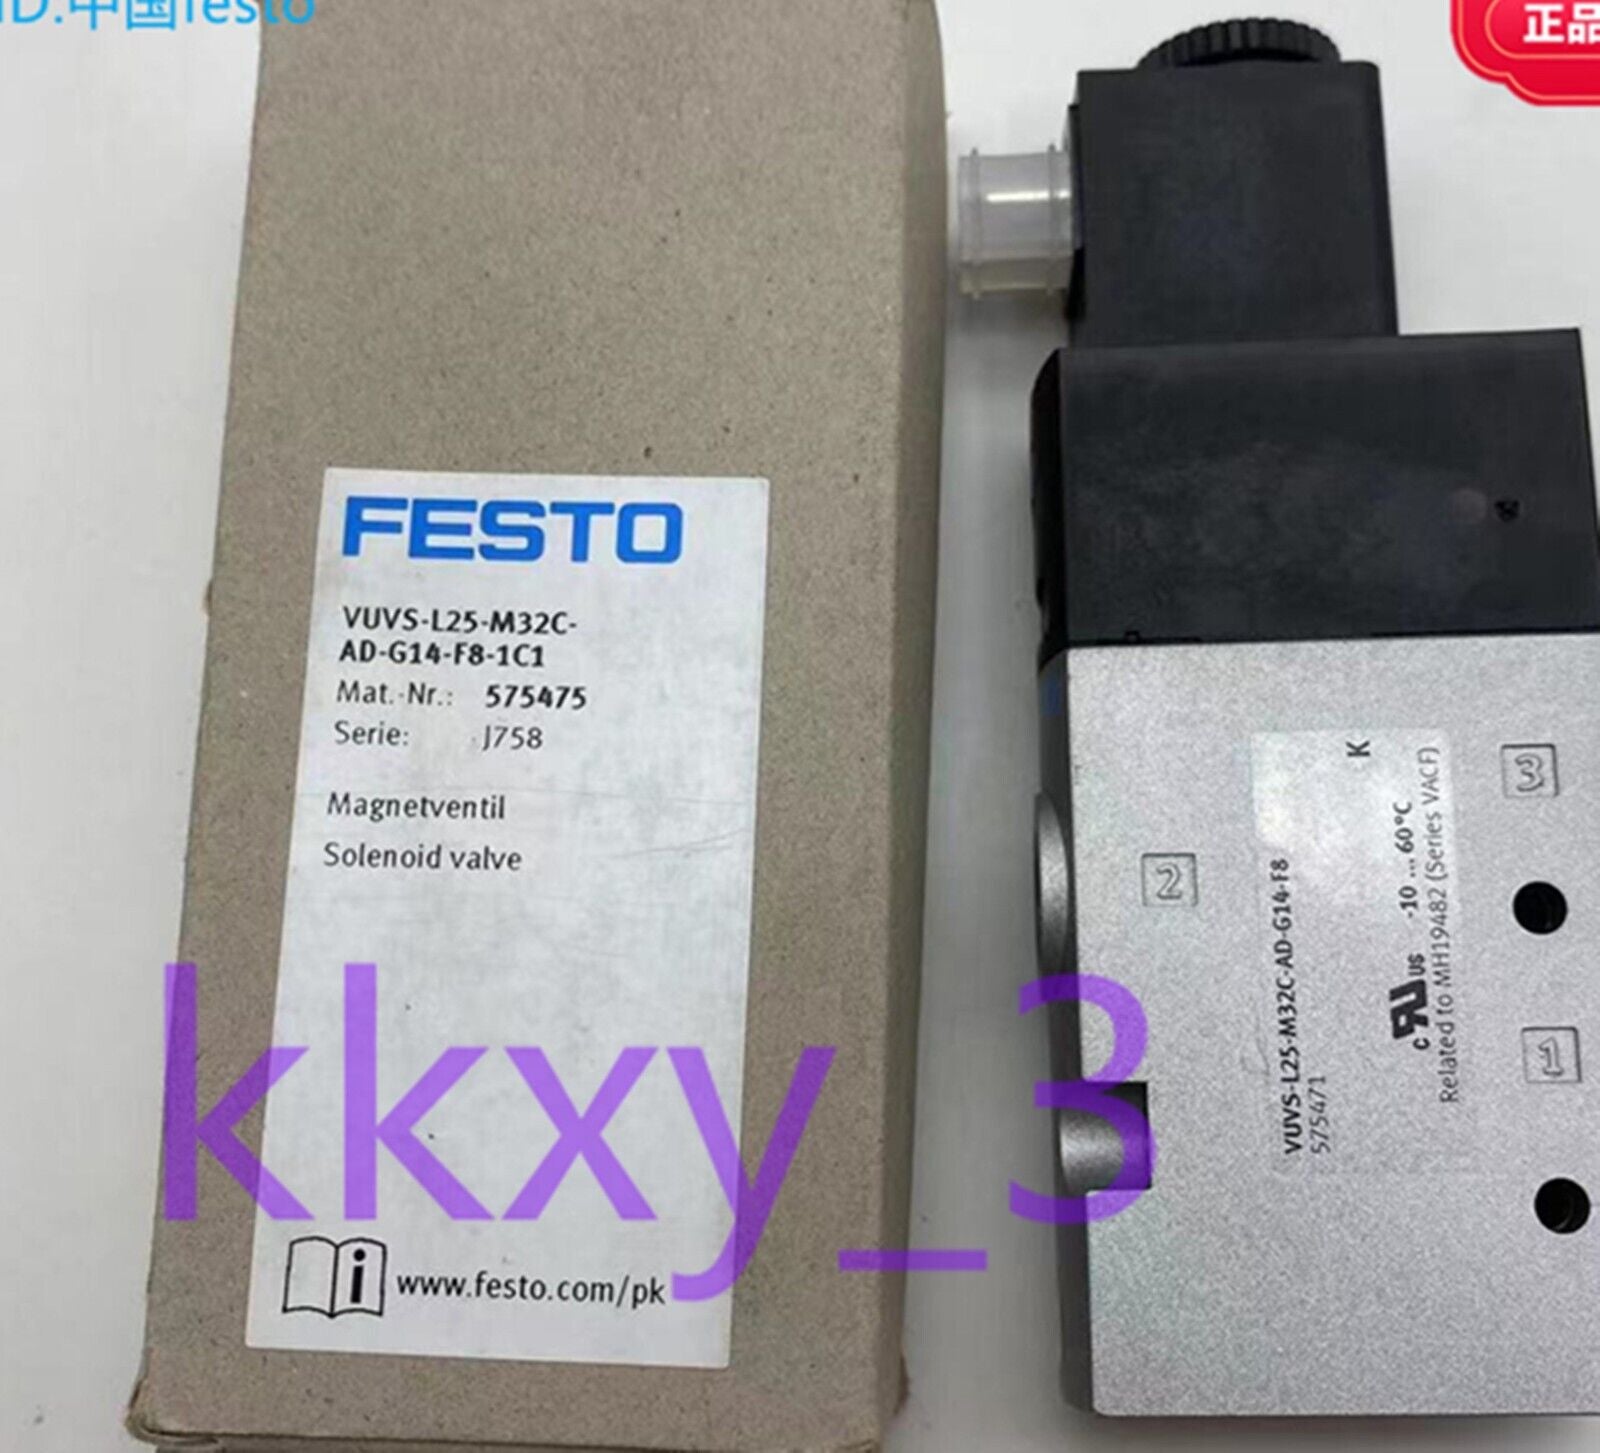 1 PCS NEW IN BOX FESTO solenoid valve VUVS-L25-M32C-AD-G14-F8-1C1 575475